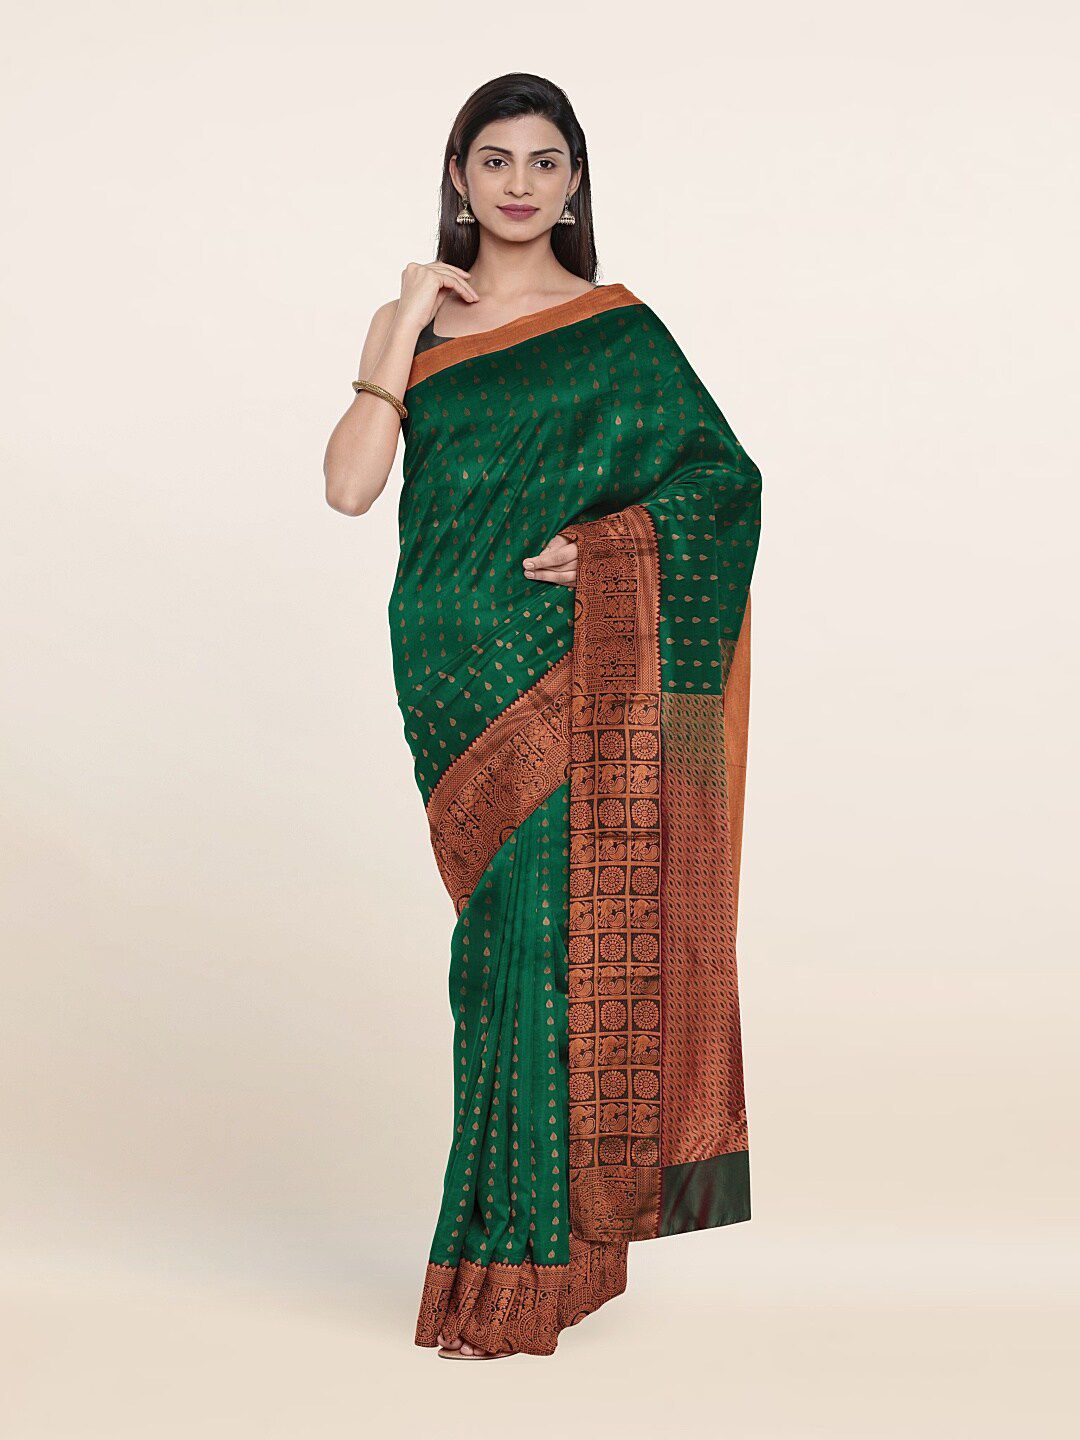 Pothys Green & Copper-Toned Ethnic Motifs Zari Pure Silk Saree Price in India